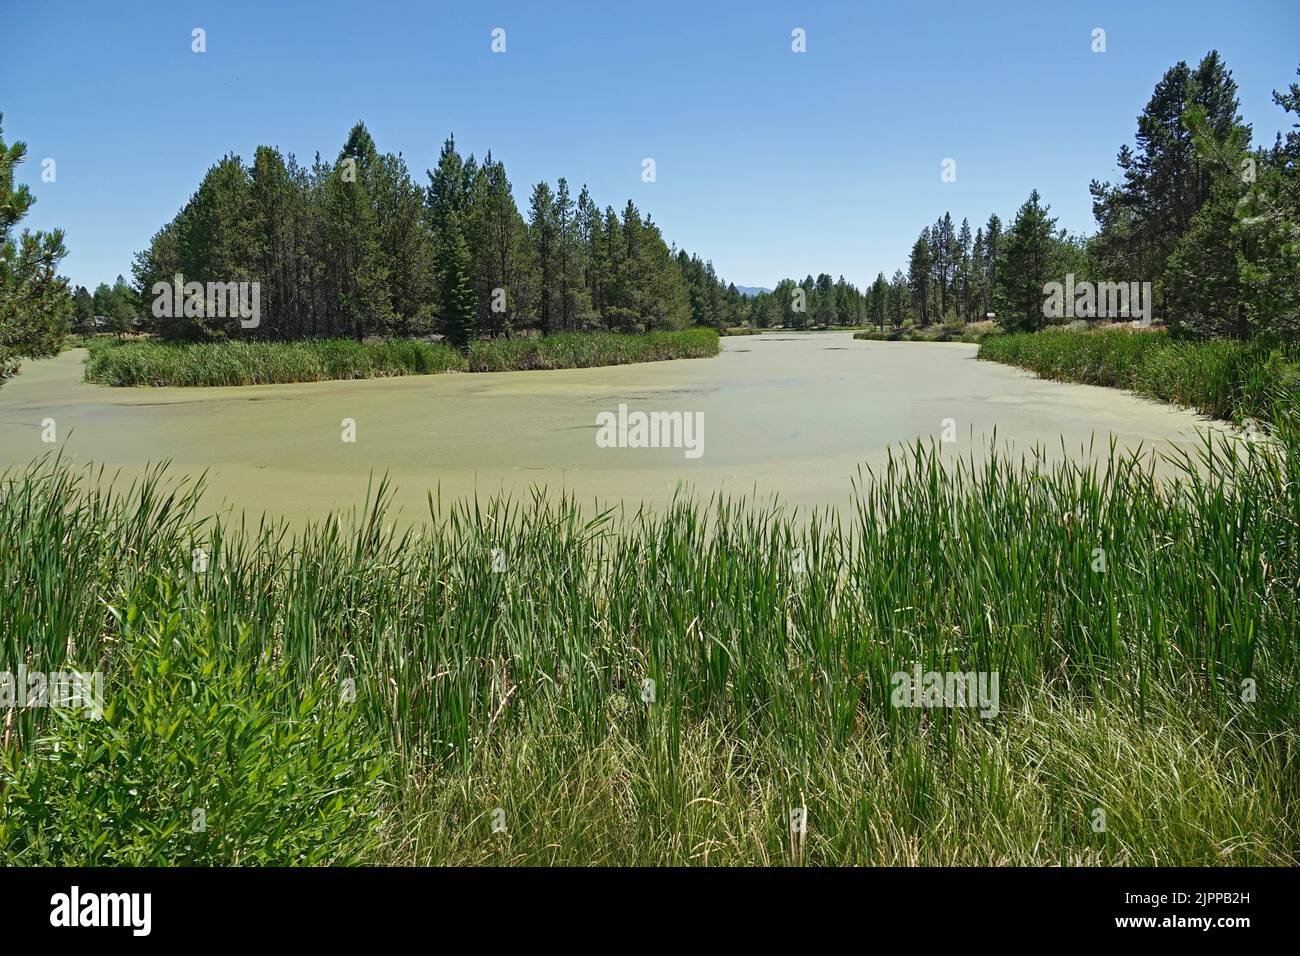 Un estanque rural siendo superado por el duckweed, Lemna minor, una planta acuática de rápido crecimiento considerada una plaga para los humanos. Foto de stock